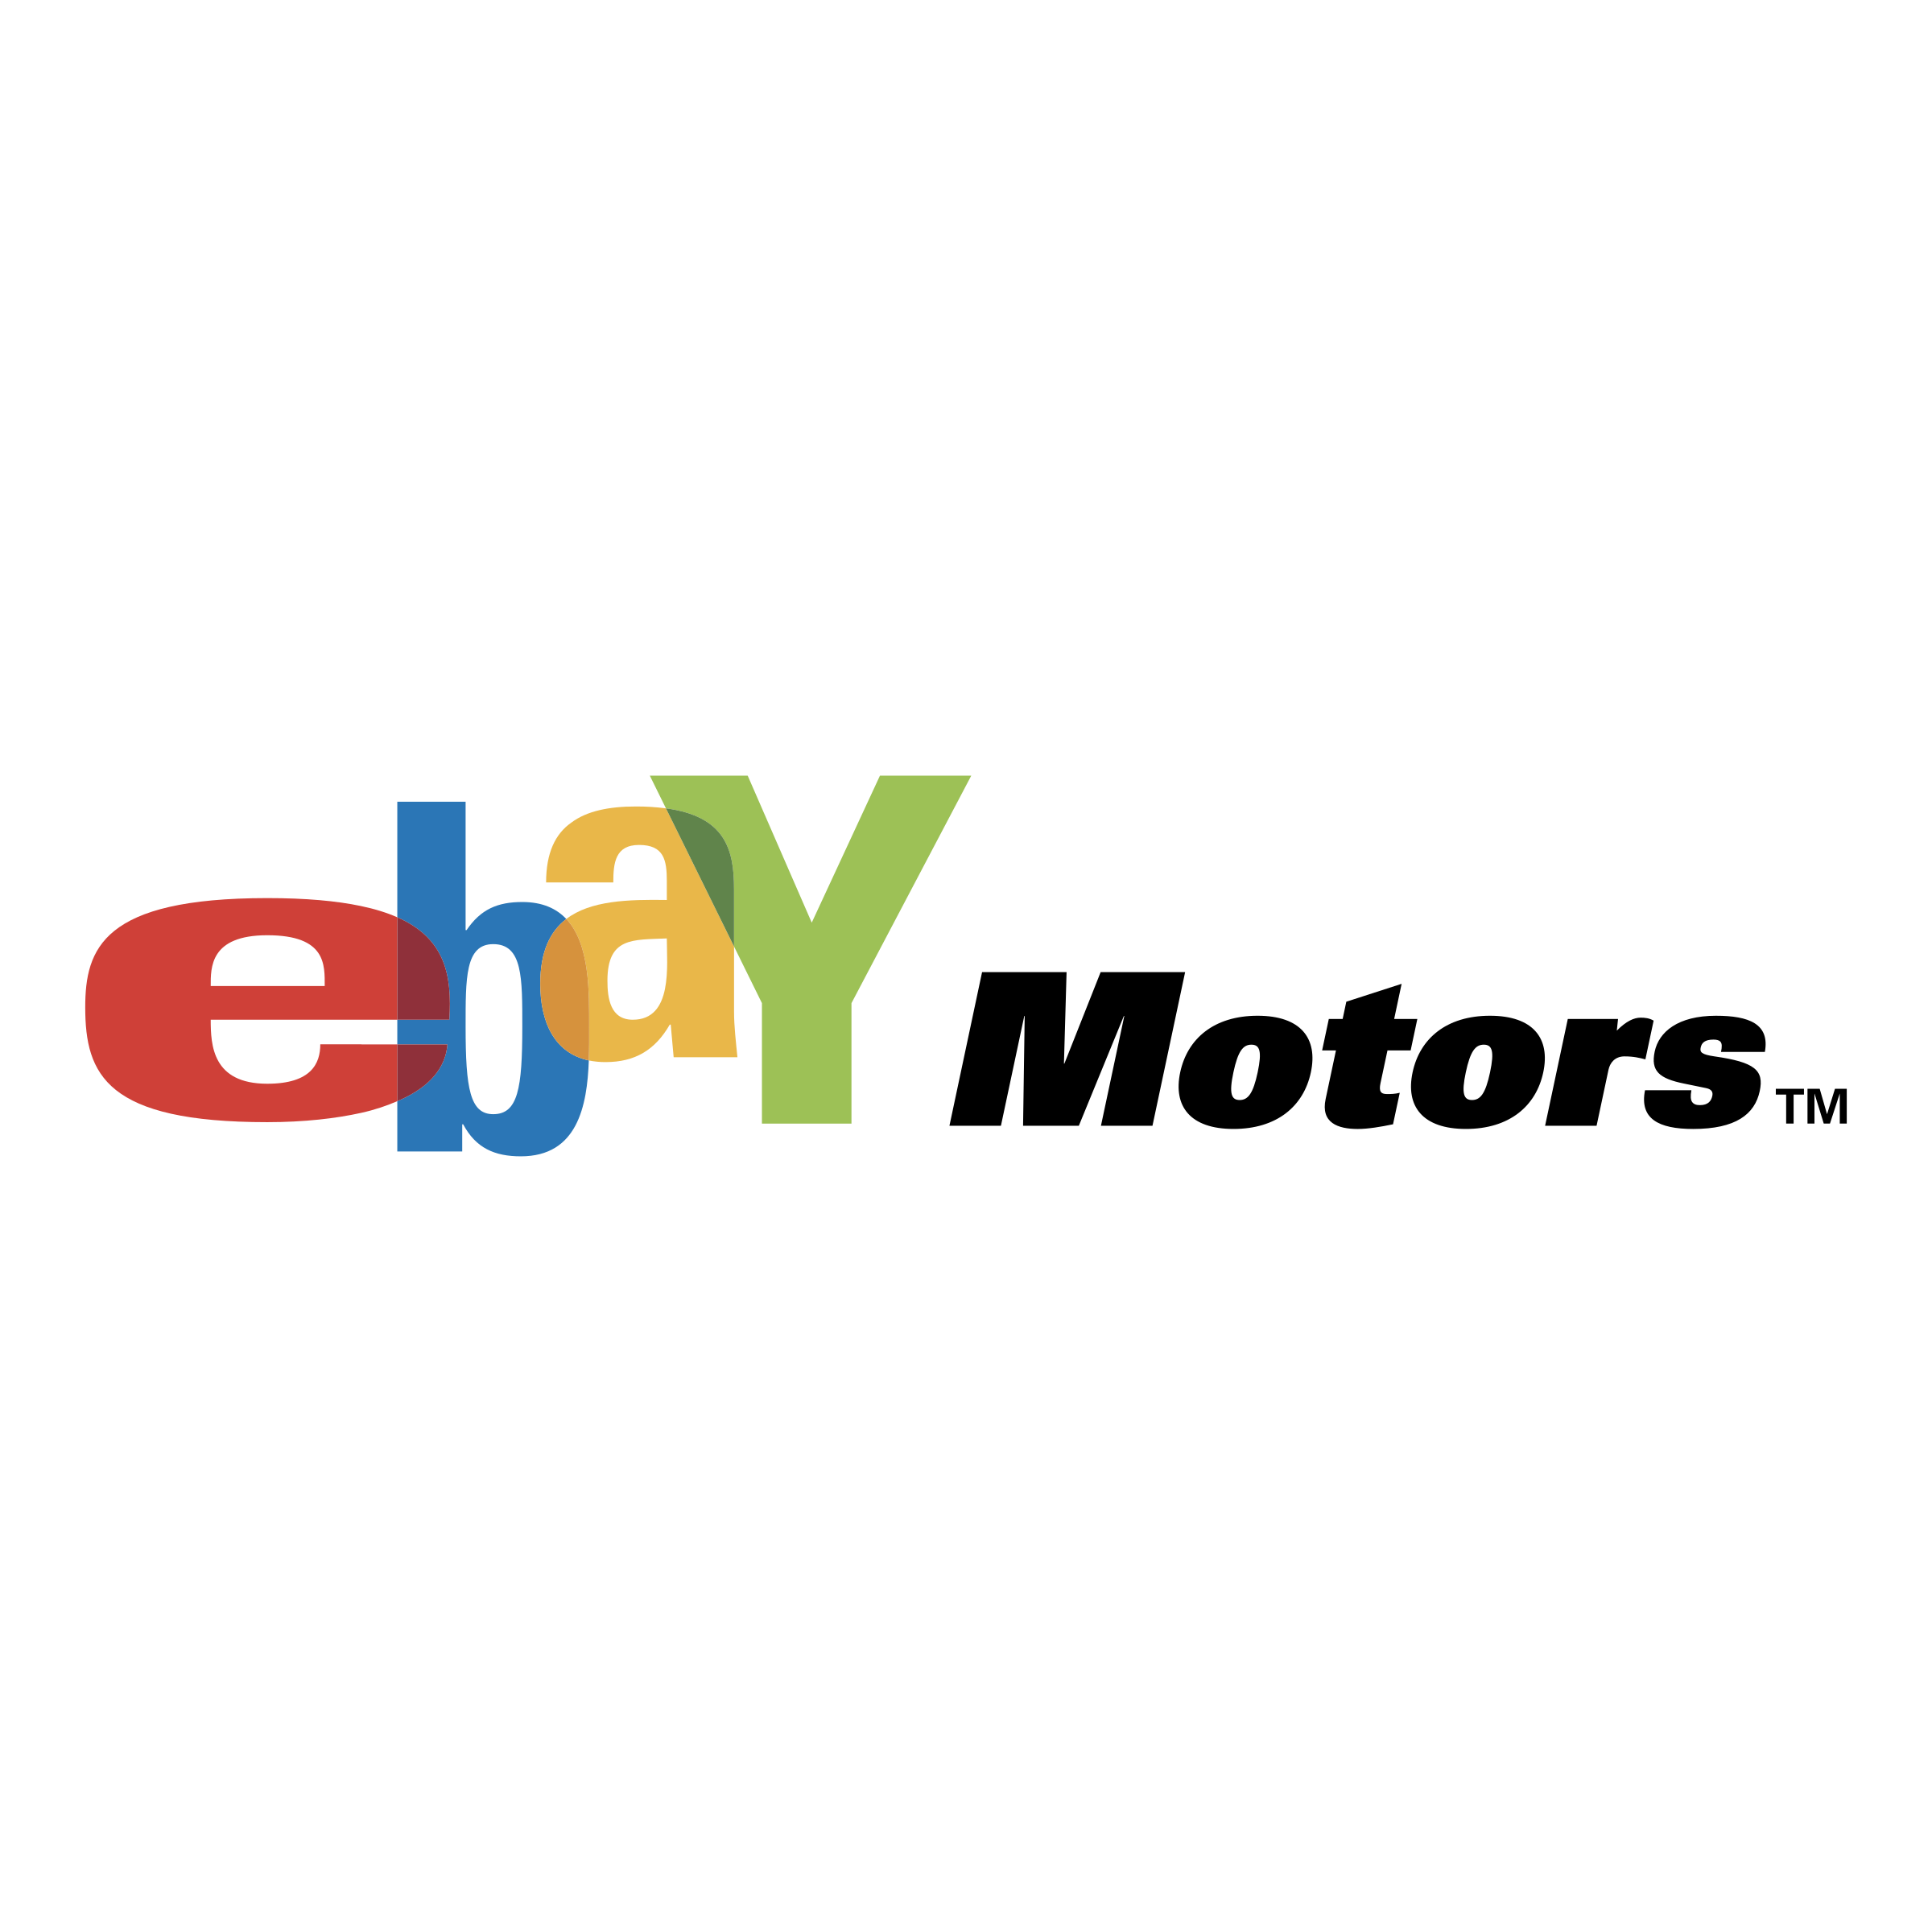 Ebay Logo PNG Image Transparent Background